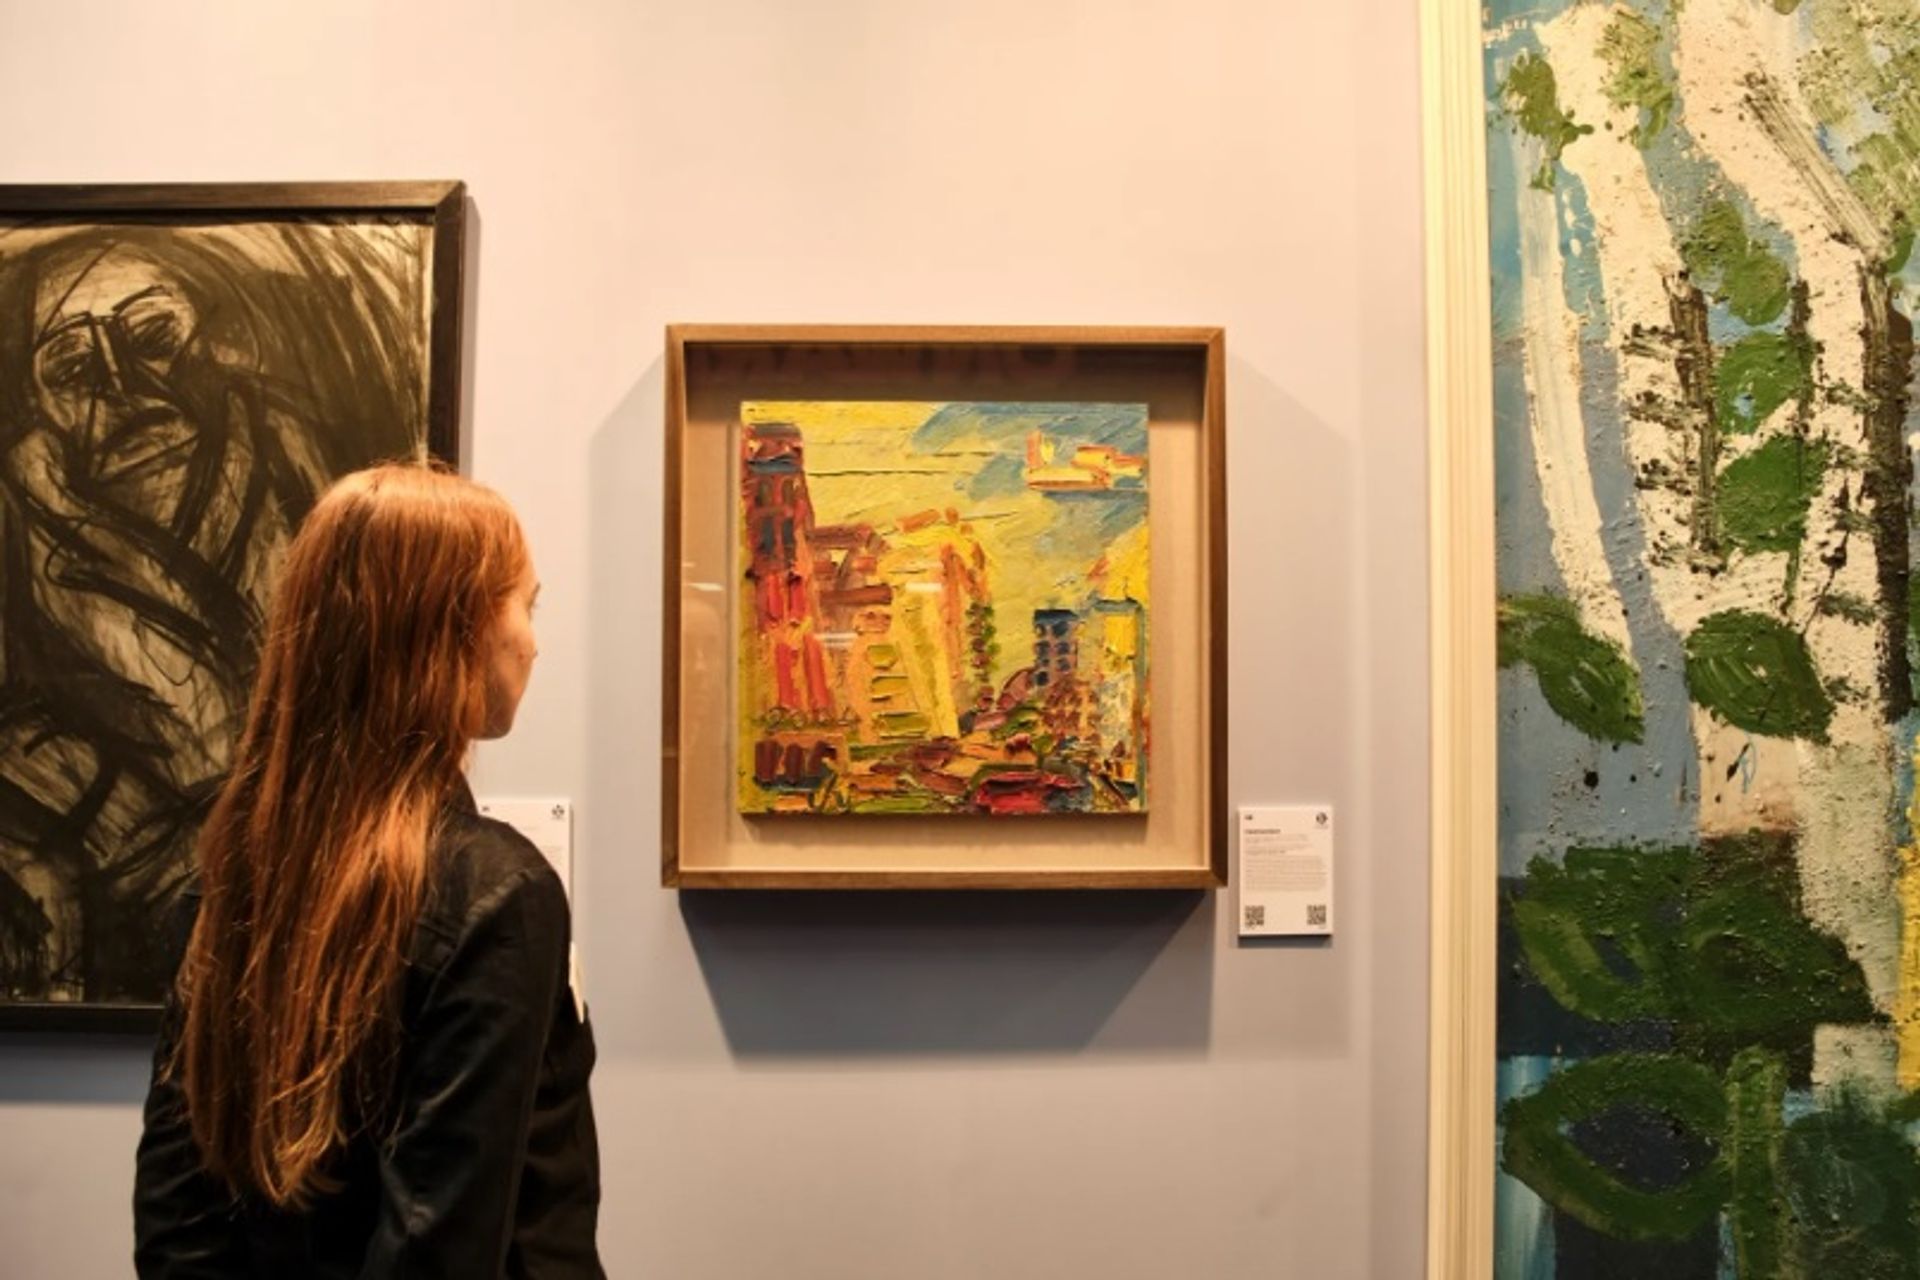 הדוכן של גלריה ומוזיאון בן אורי ביריד האמנות של לונדון 2022

צילום: מארק קוקסדג'